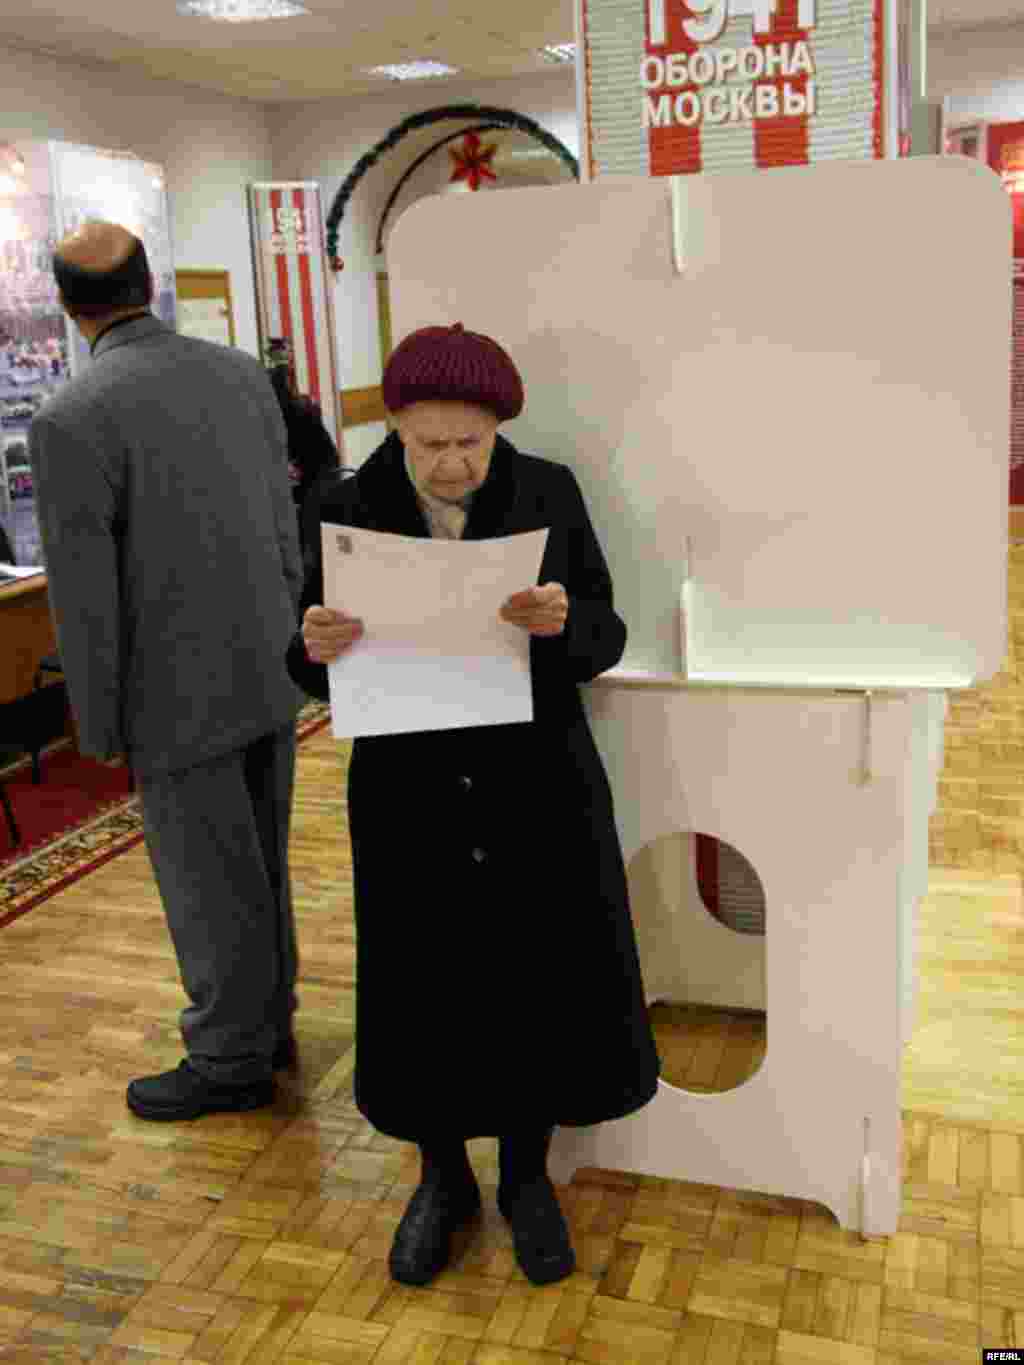 Утром большую часть избирателей составляют пенсионеры. Москва, 2 декабря 2007 года